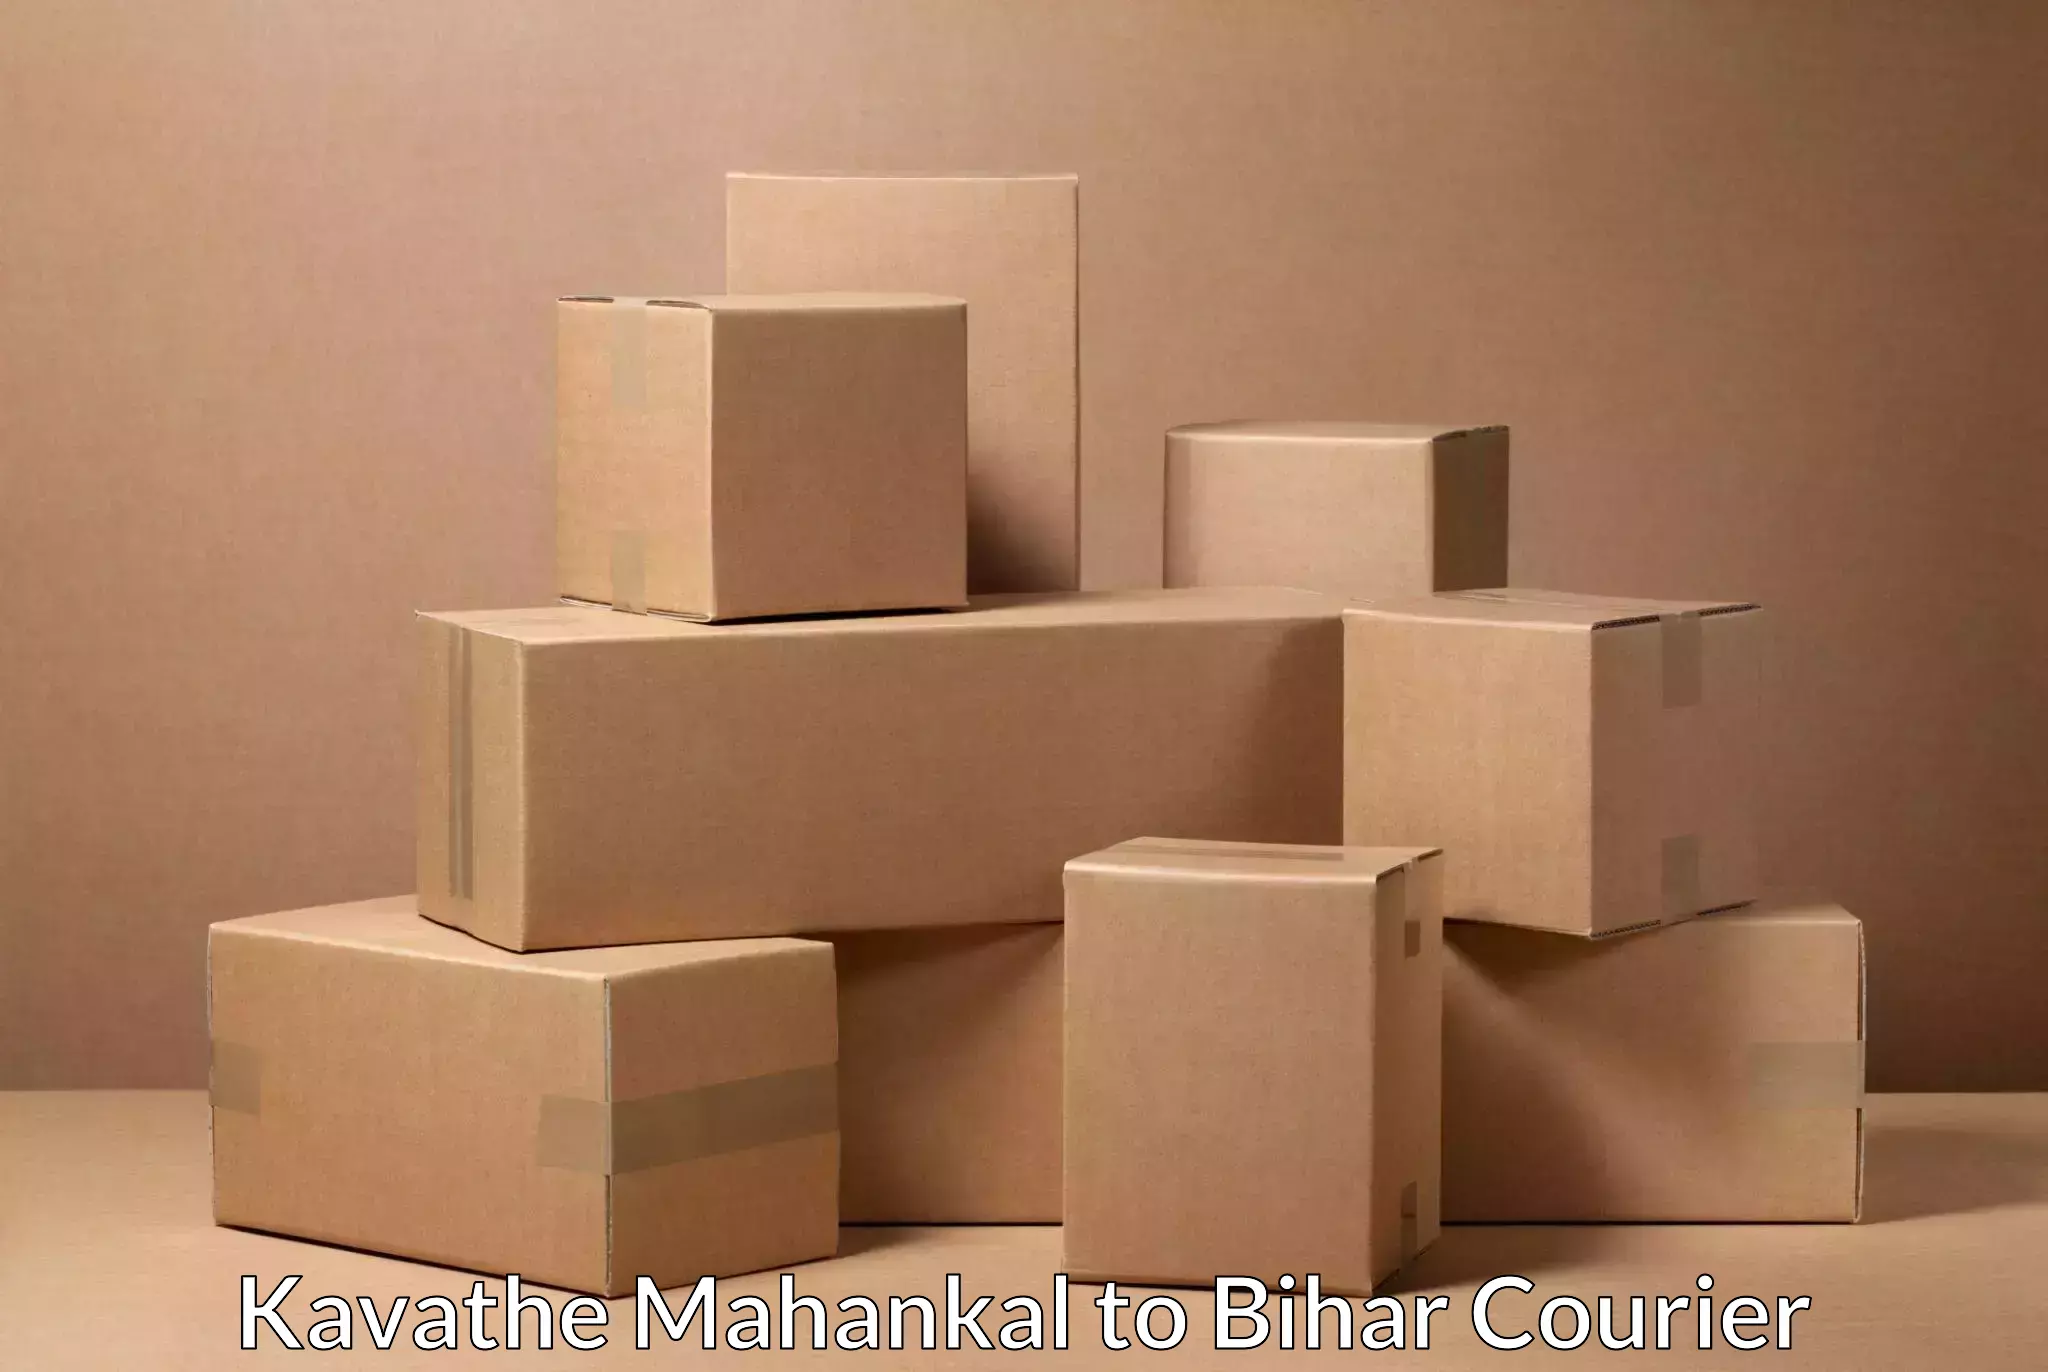 Efficient package consolidation Kavathe Mahankal to Mashrakh